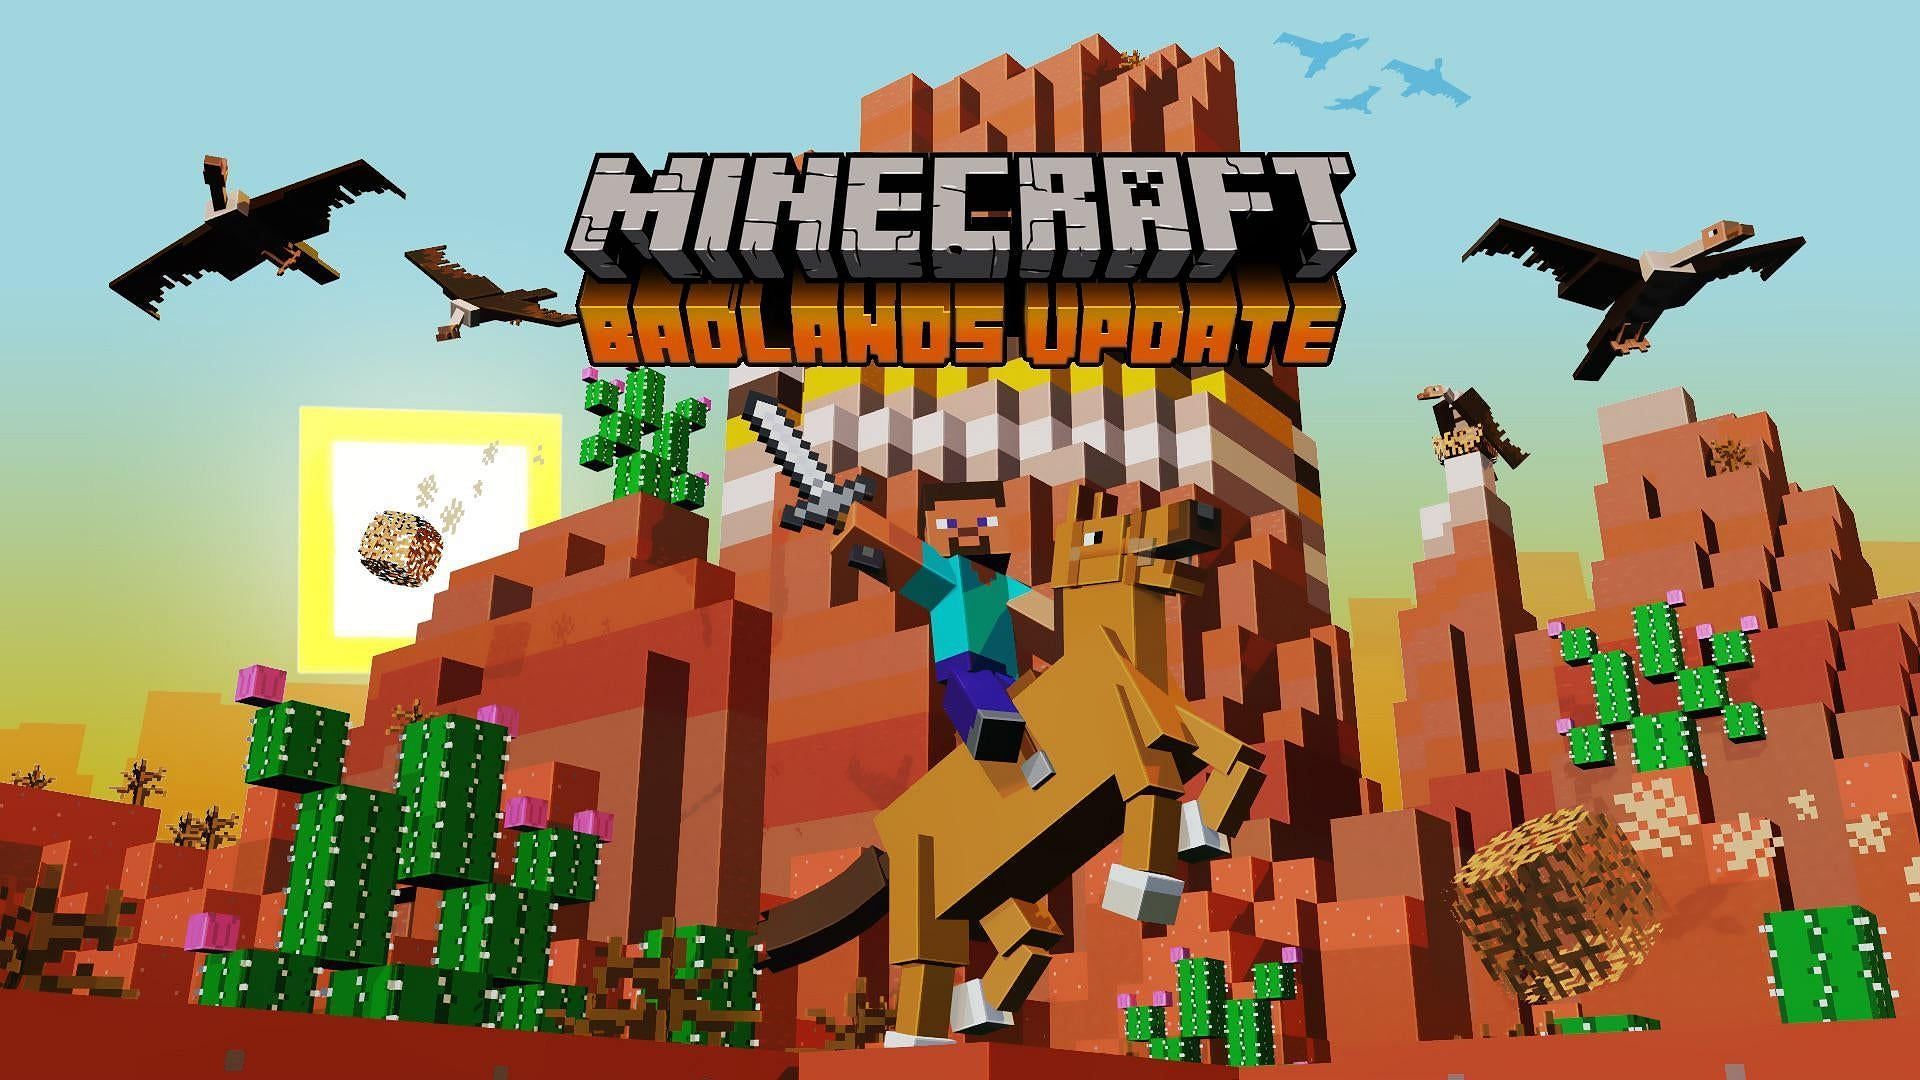 Minecraft Badlands update - Minecraft fan update (Image via Reddit u/Persnickety_Playz)